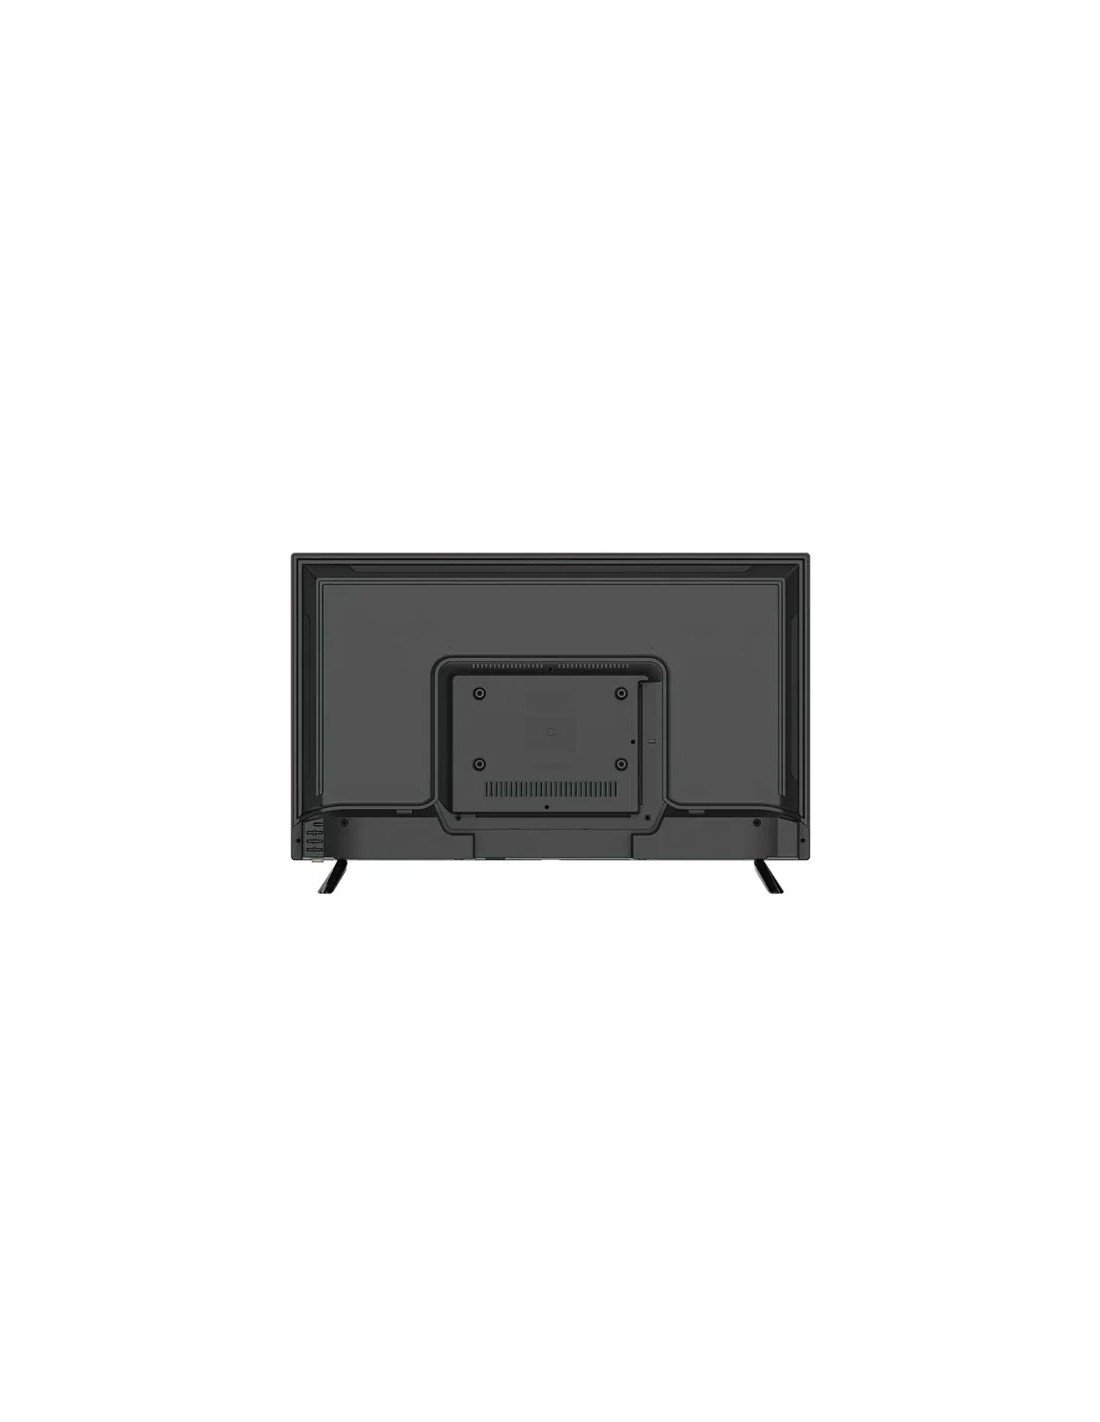 TV Incurvée LED - Aiwa - L18 - 32 pouces - Décodeur Intégré - 12 Mois